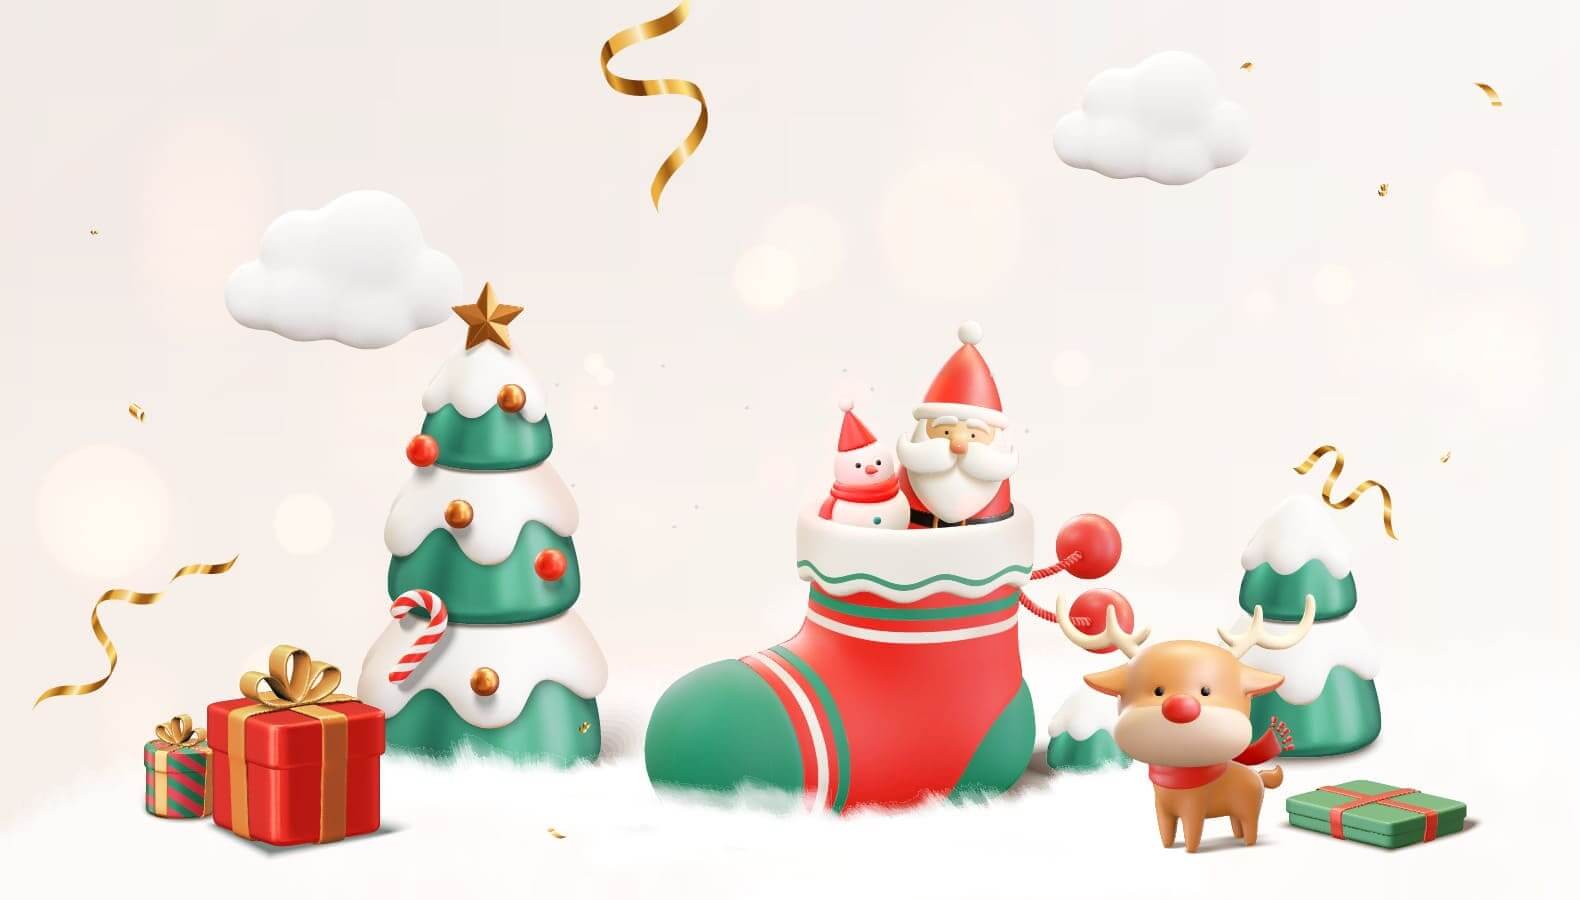 Admitad Affiliate поздравляет вас с Новым годом и Рождеством!